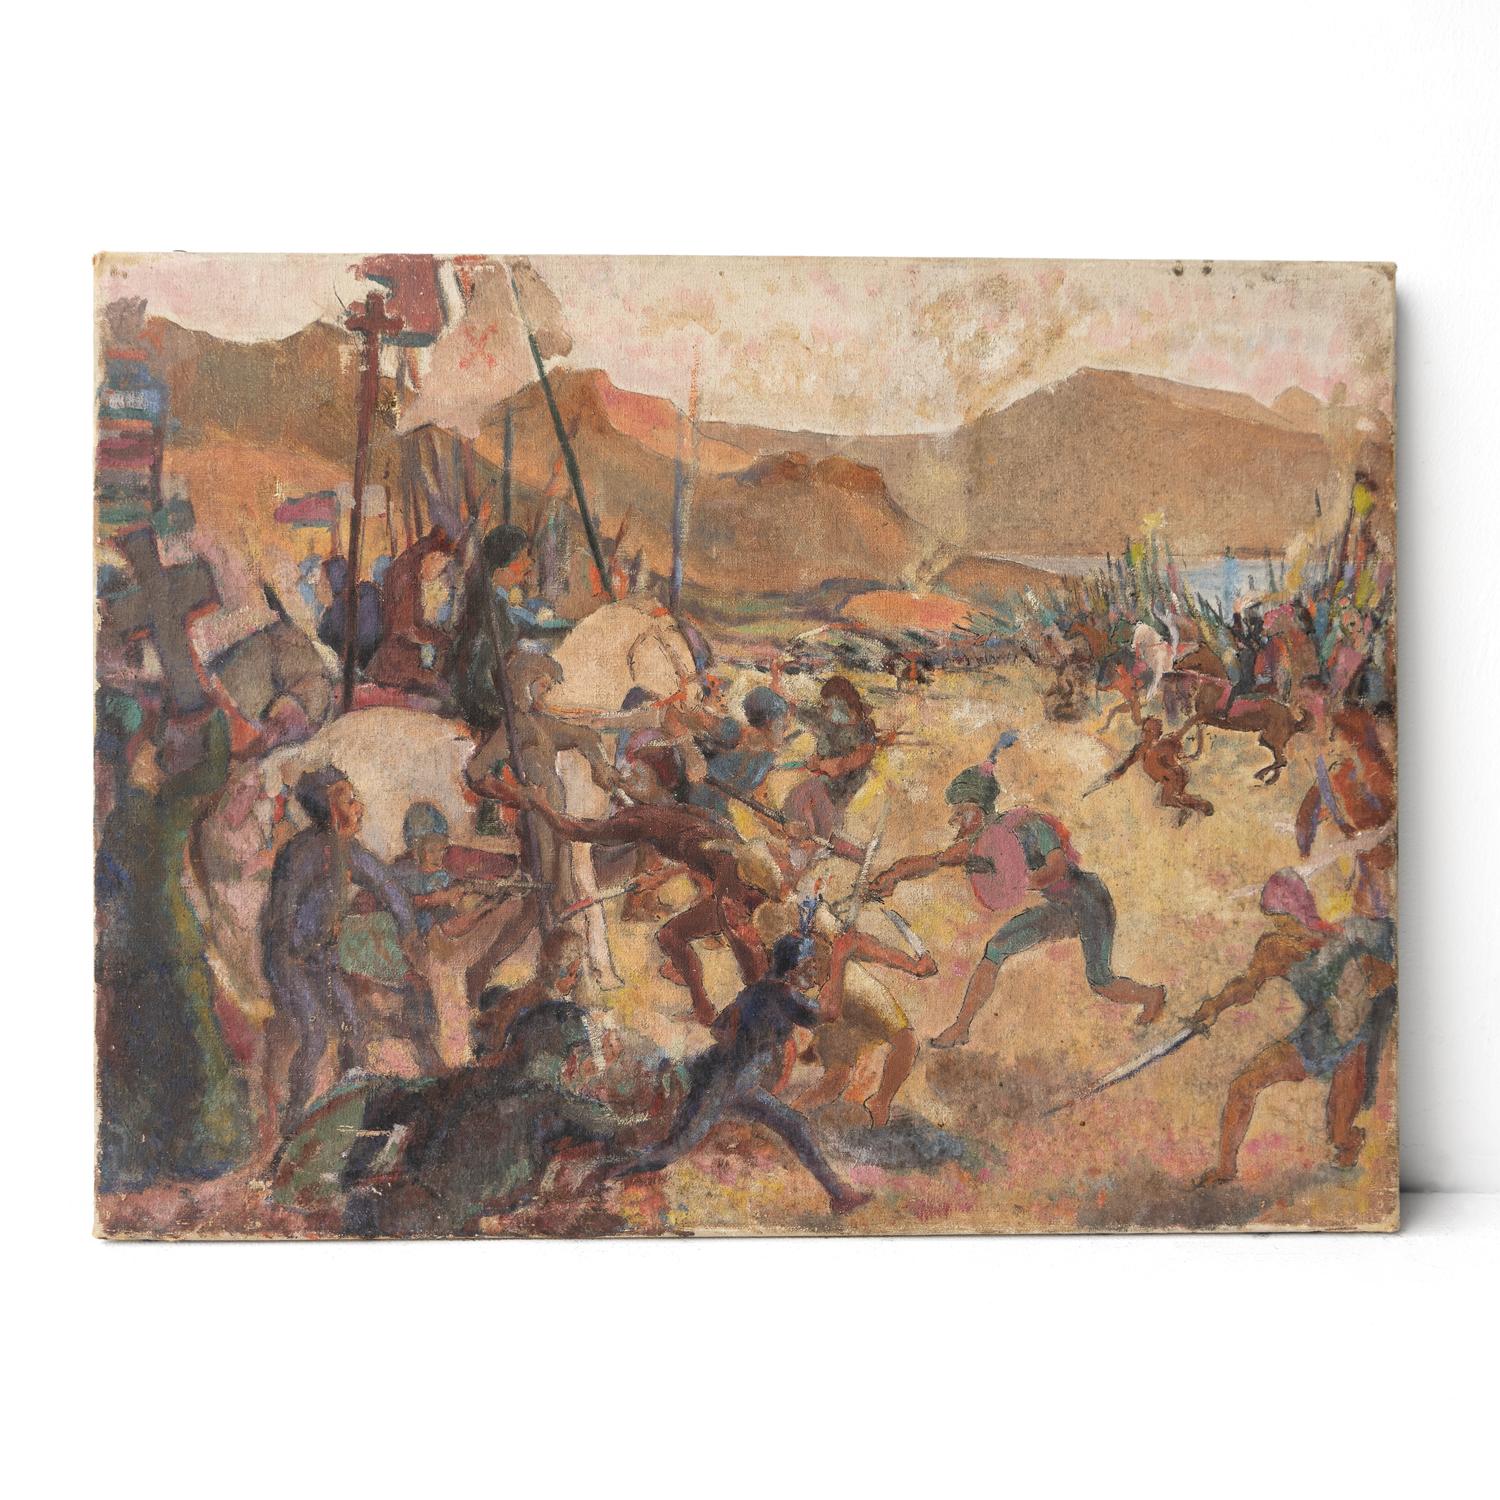 Antike Original Öl auf Leinwand Gemälde 

Eine wunderbar energiegeladene Darstellung einer orientalischen Schlachtszene, die wahrscheinlich die mittelalterlichen Kreuzzüge darstellt, mit Rittern zu Pferd, Pikenieren und Kriegern mit